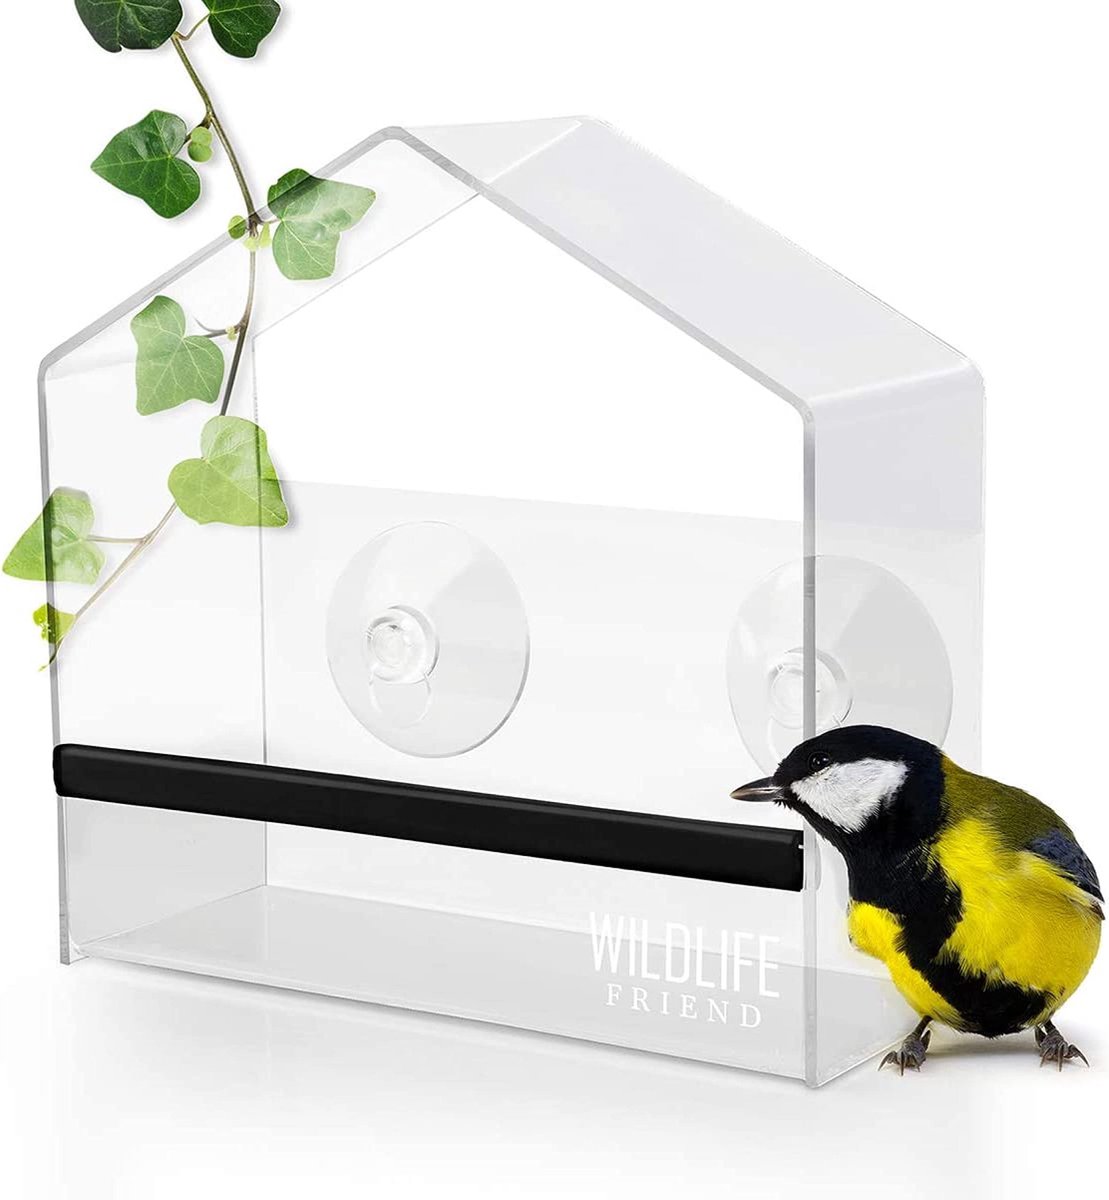 Mangeoire transparente en acrylique pour oiseaux avec cage à